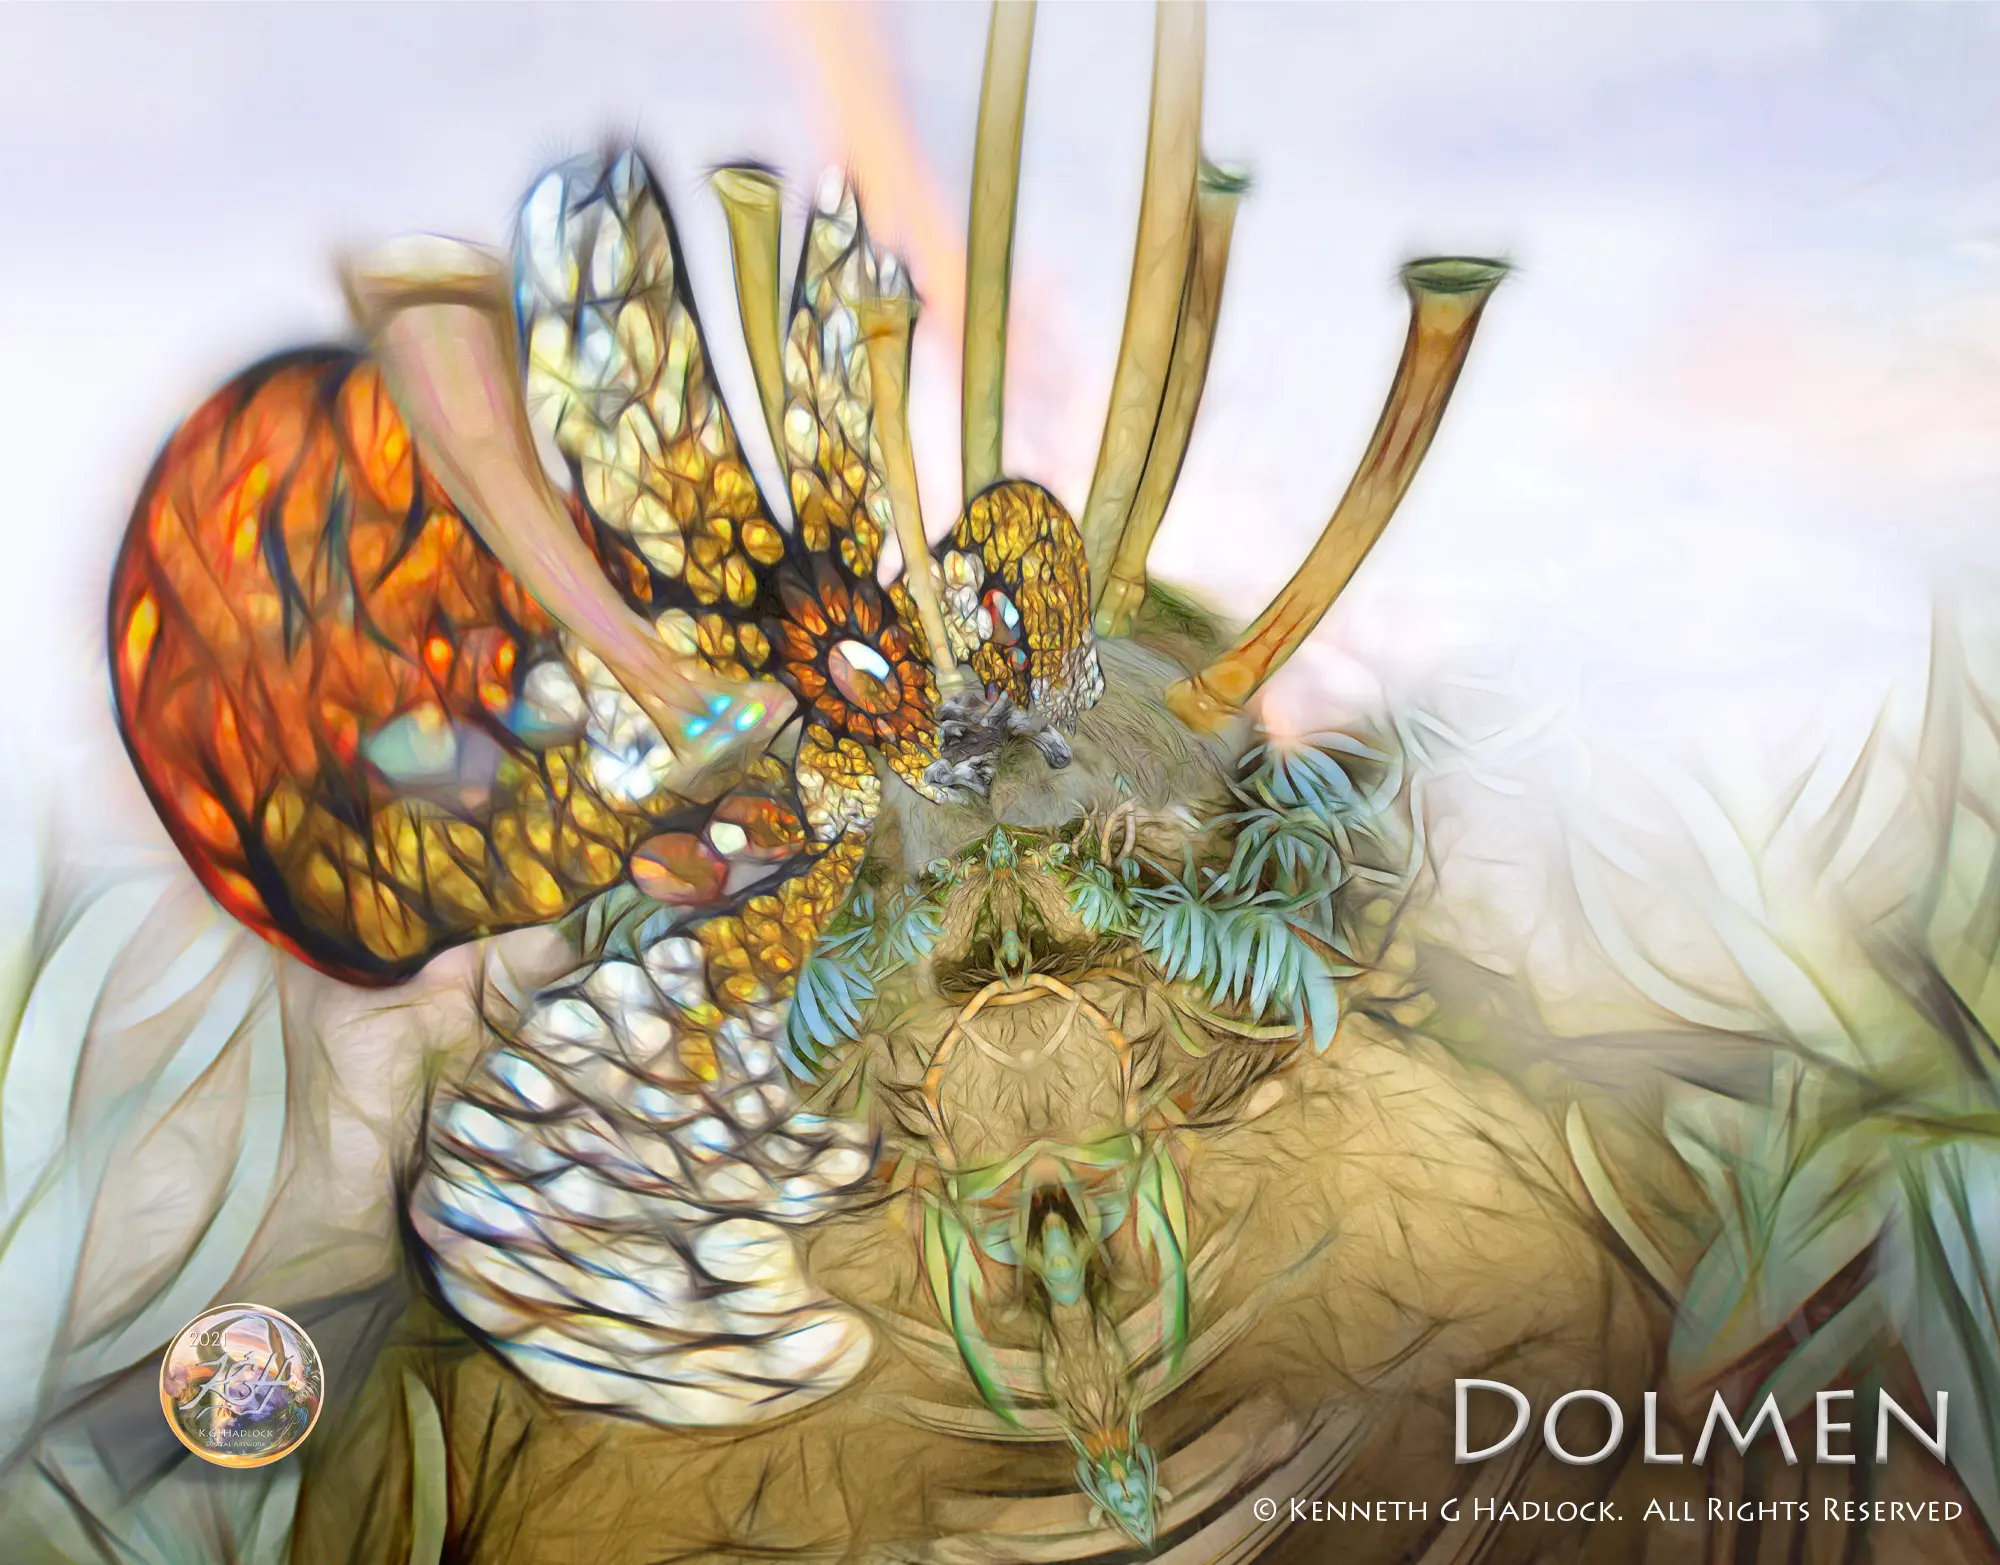 Digital Art - "Dolmen"